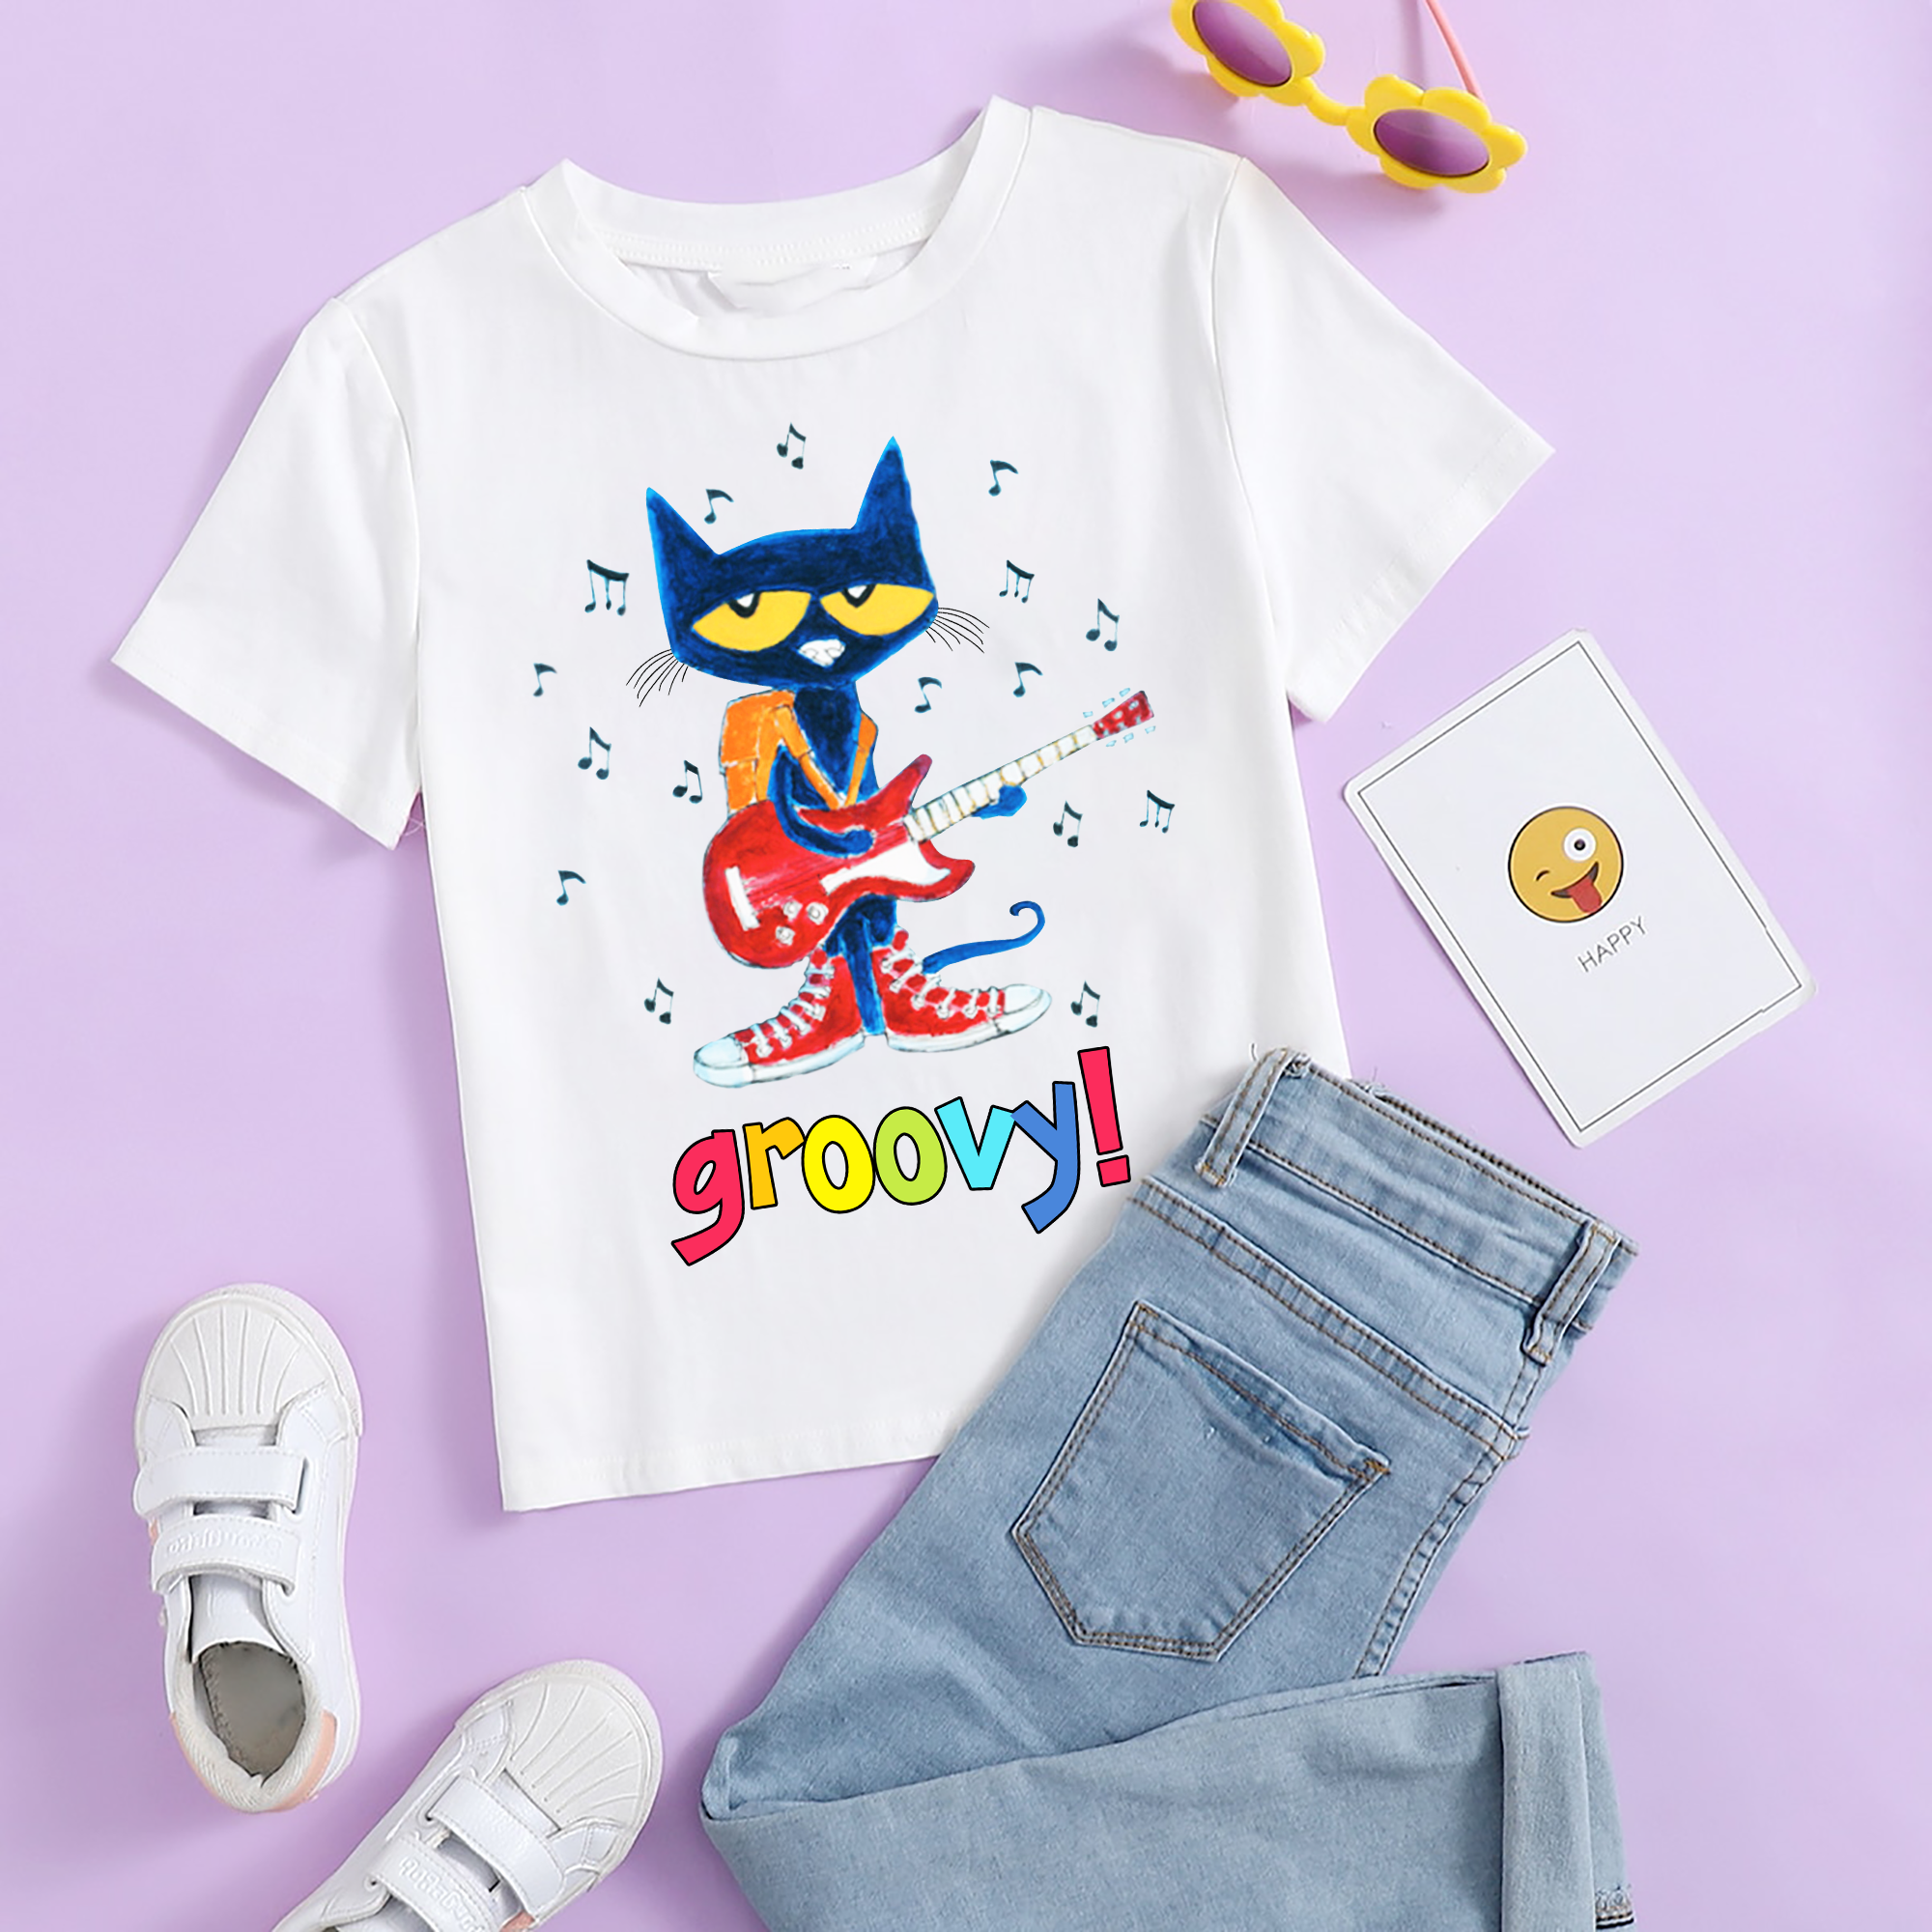 Pete The Cat Groovy Shirt, Groovy Blue Cat T-Shirt, Pete The Cat Lover Shirt, A Good Day To Teach Tiny Human,Cat Kindergarten,Teacher shirt